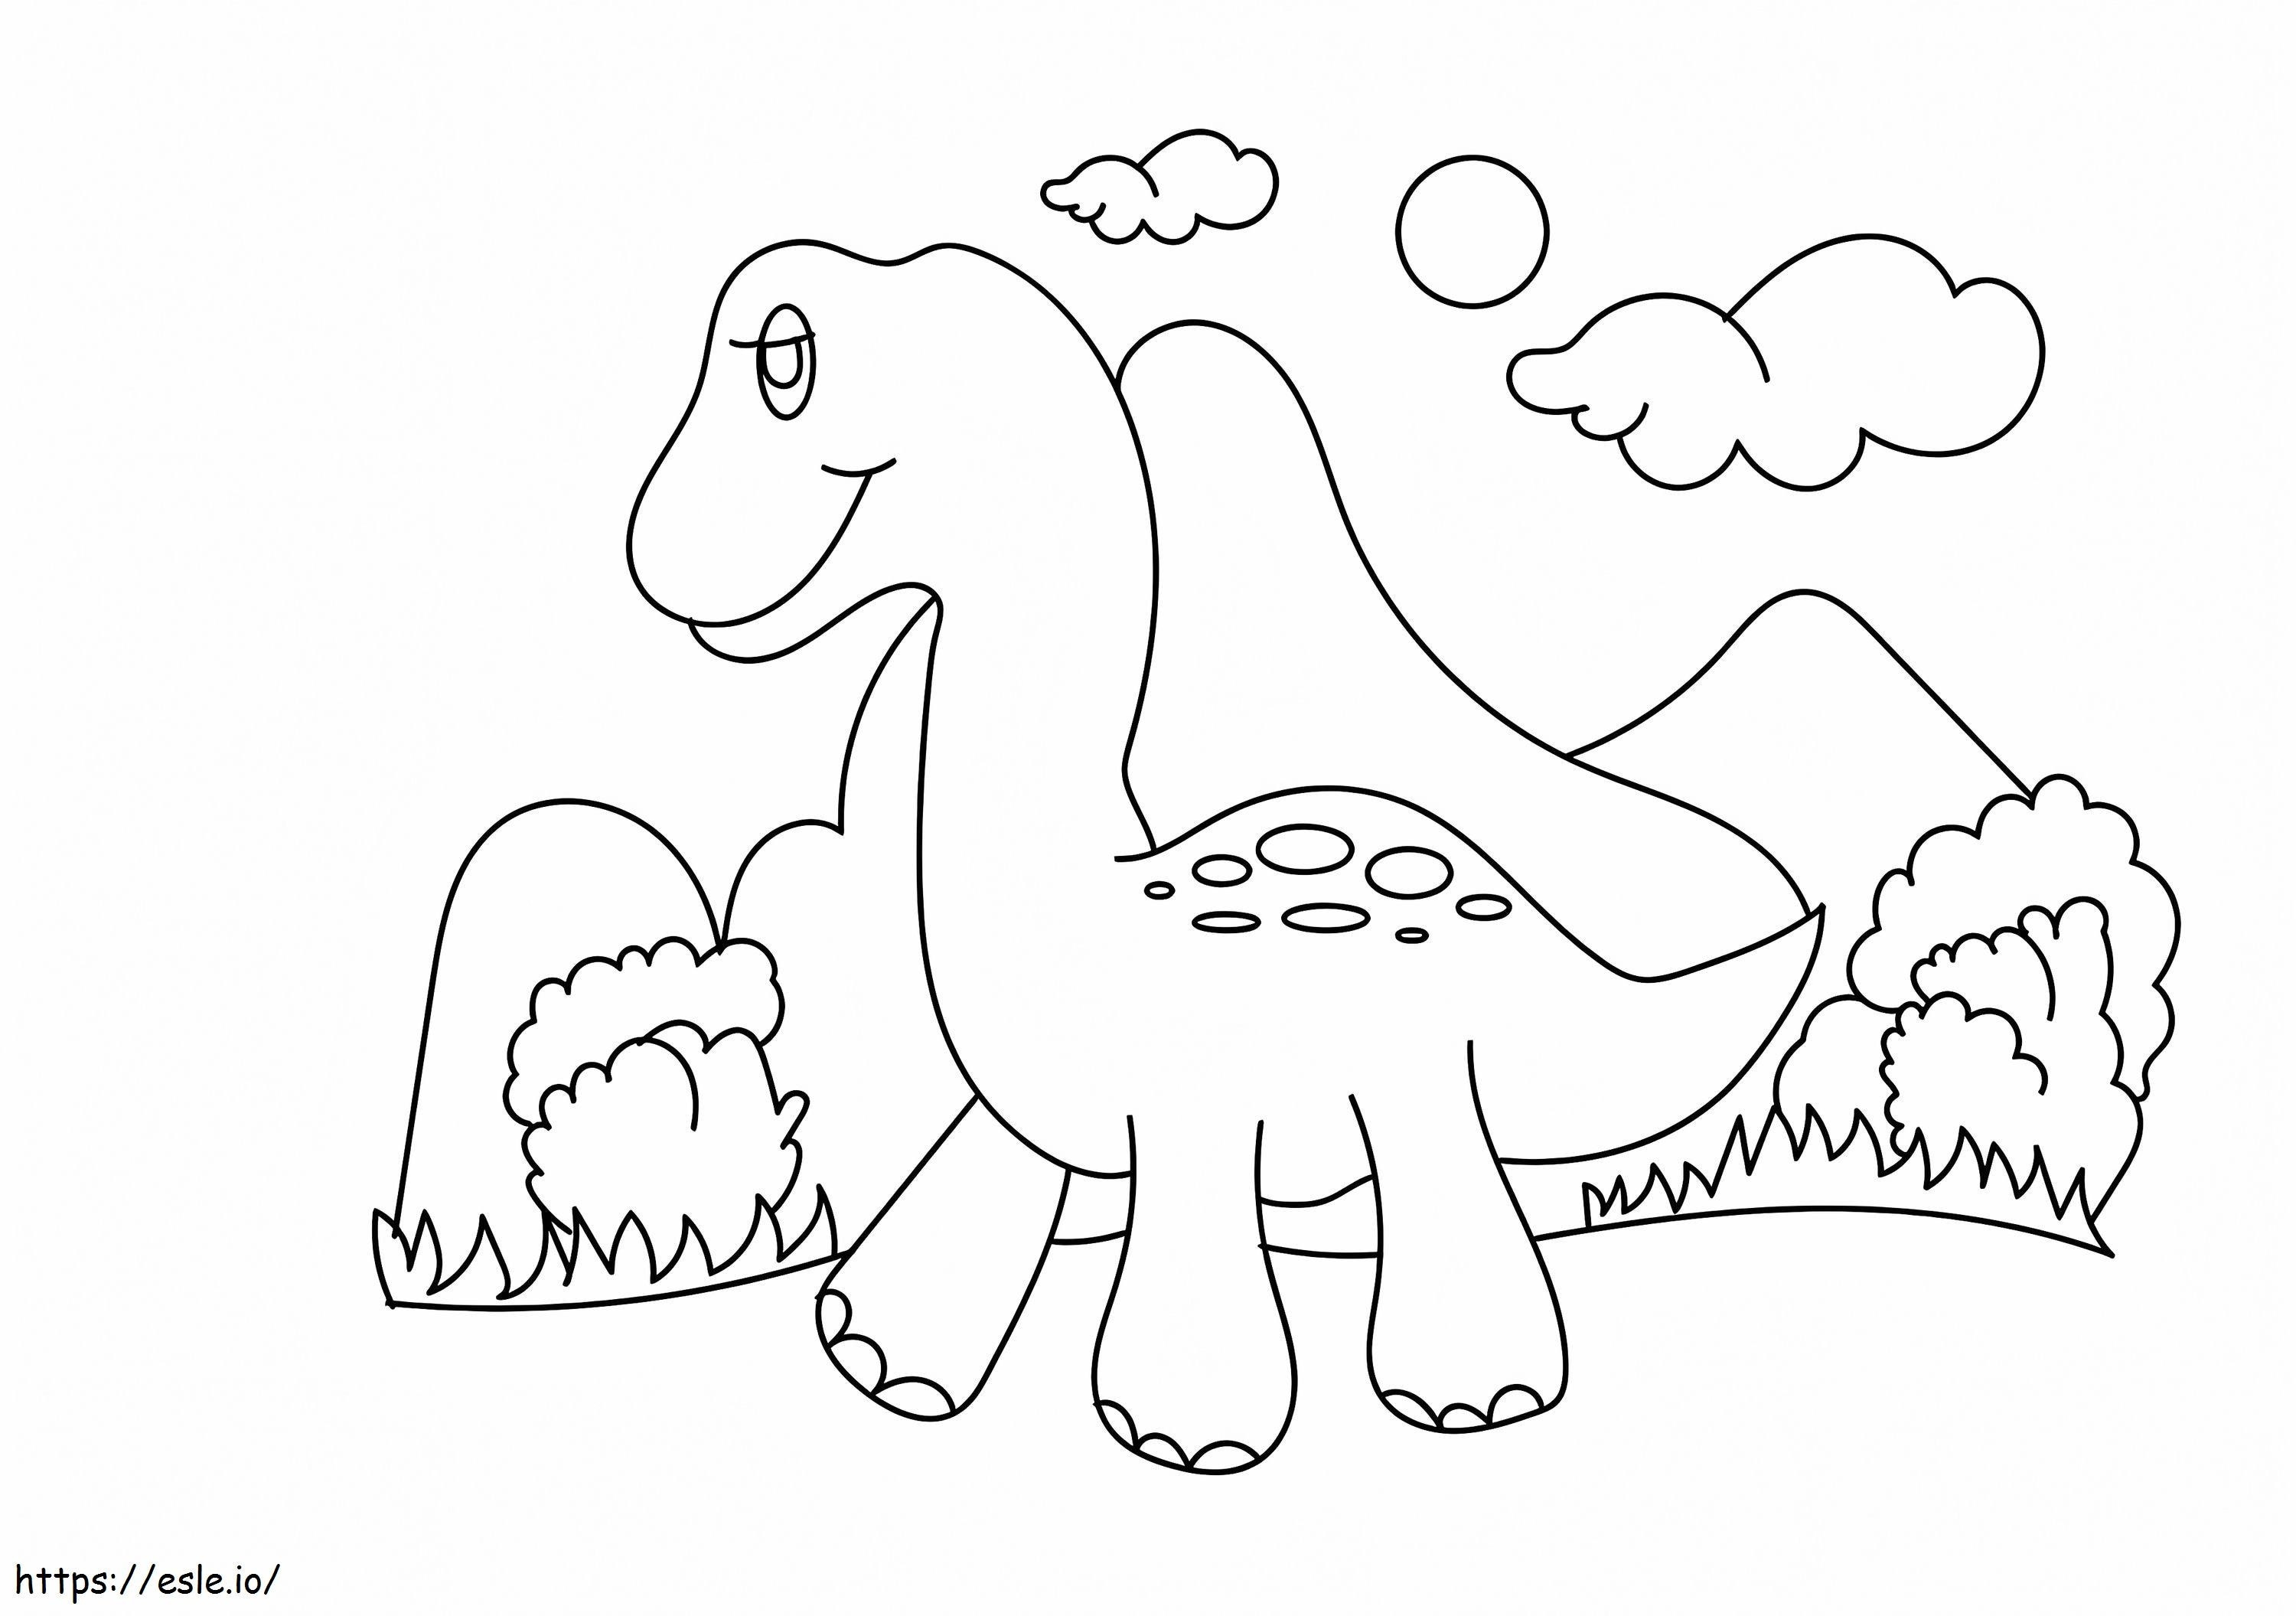 Cucciolo di dinosauro che cammina E1600663663872 da colorare